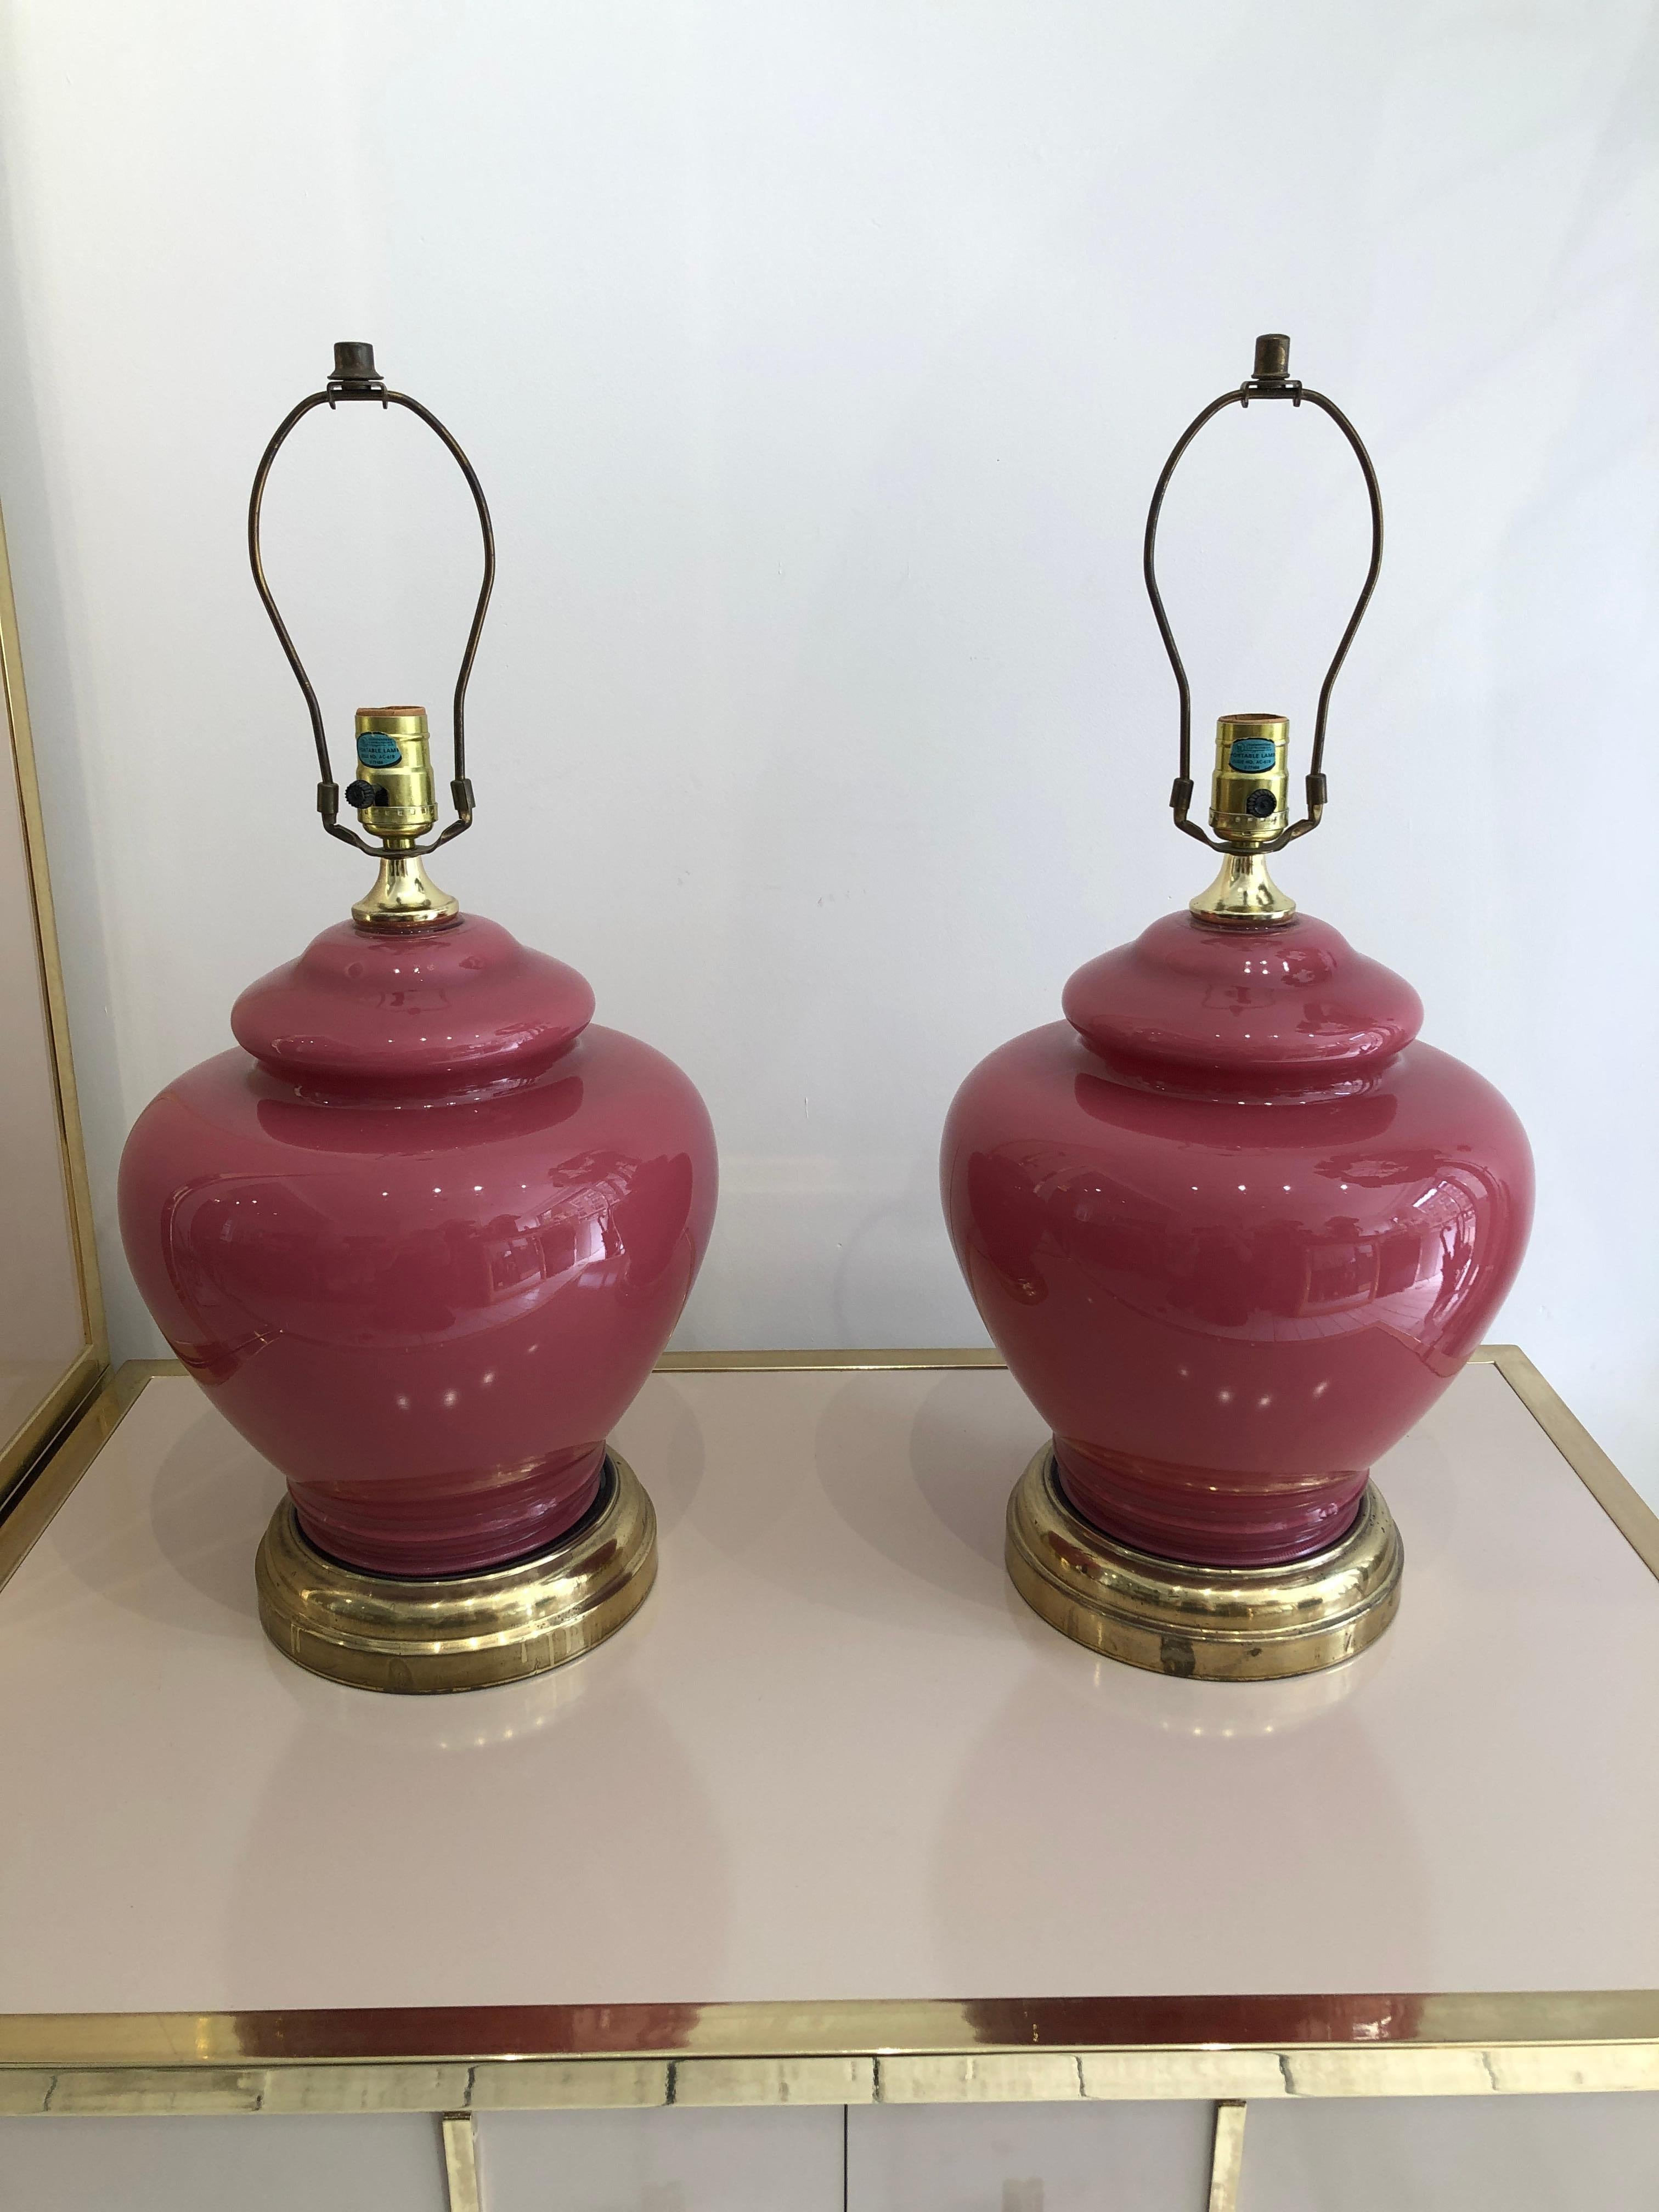 Cette paire de lampes de table en verre bulbeux, d'un ravissant rose framboise, a été importée des États-Unis et créée à l'origine dans les années 1970. La base de la lampe est large et les accessoires sont en laiton. Cette pièce ferait une